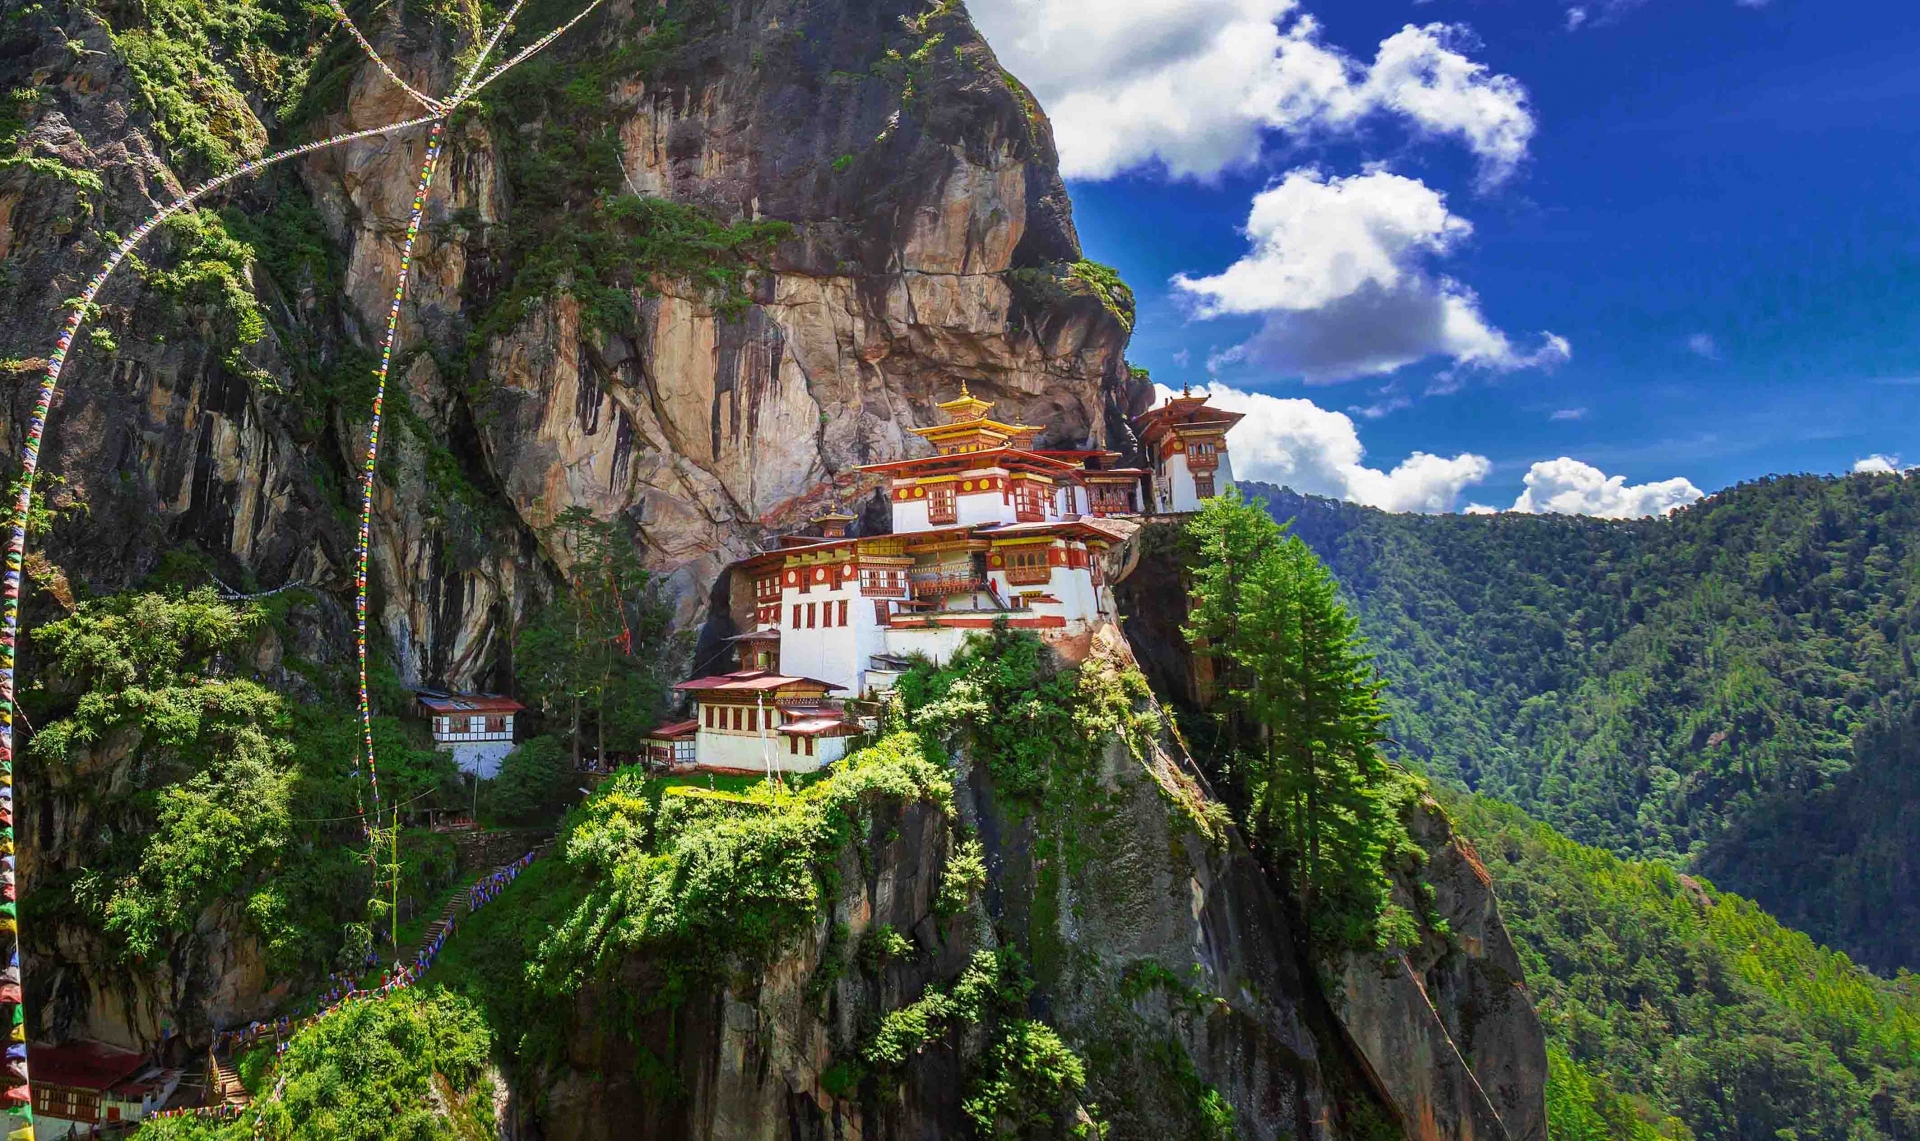 Tu viện Taktsang: Tu viện mang tính biểu tượng, điểm đến ai cũng muốn ghé ở Bhutan  - Ảnh 1